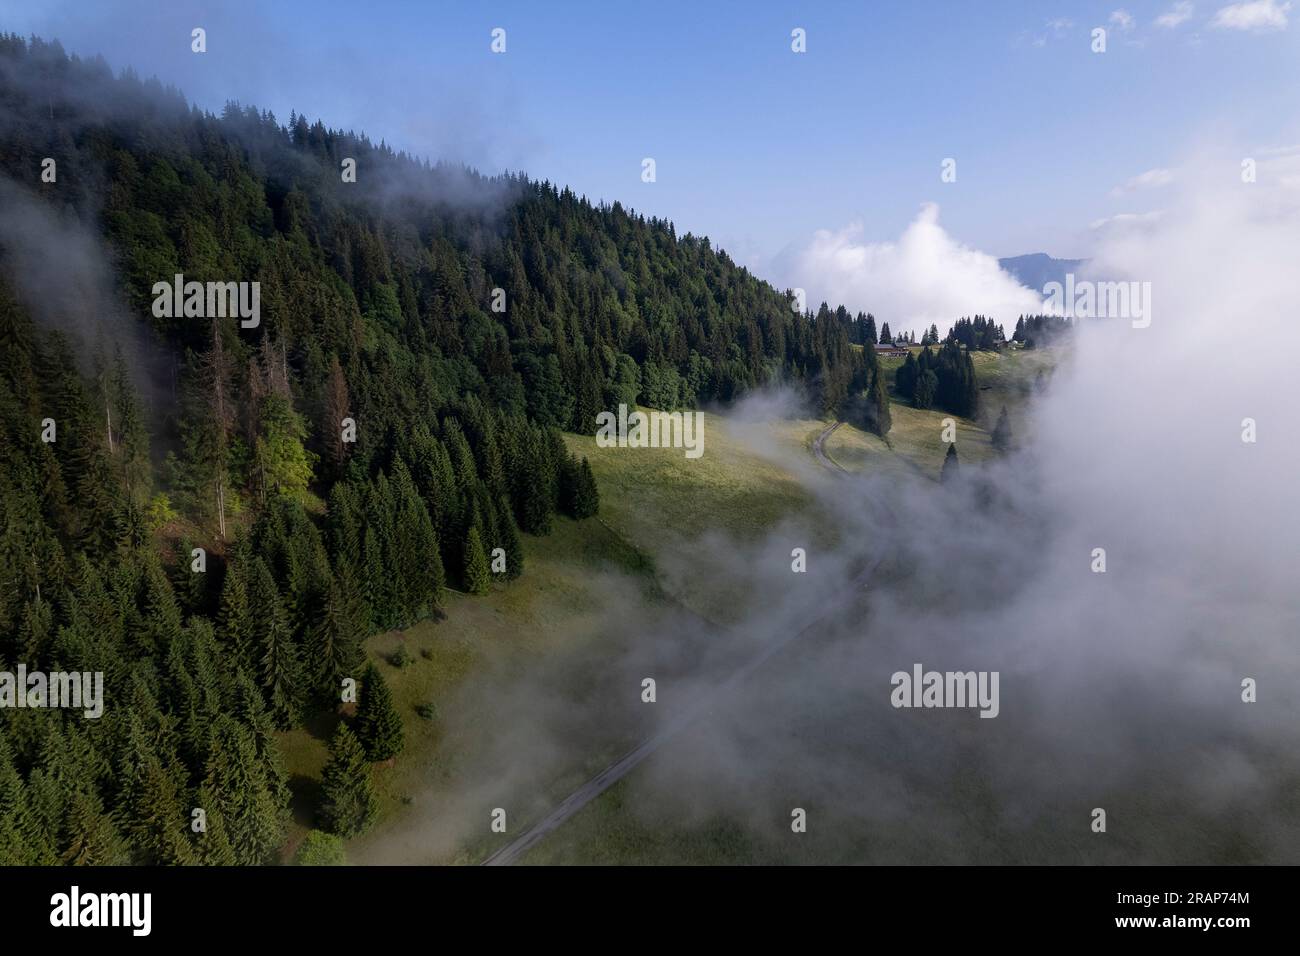 Panorama aereo del pendio montano con prati verdi e divisori di pini con nubi che oscurano metà del paesaggio. Concetto di condizioni meteorologiche. Foto Stock